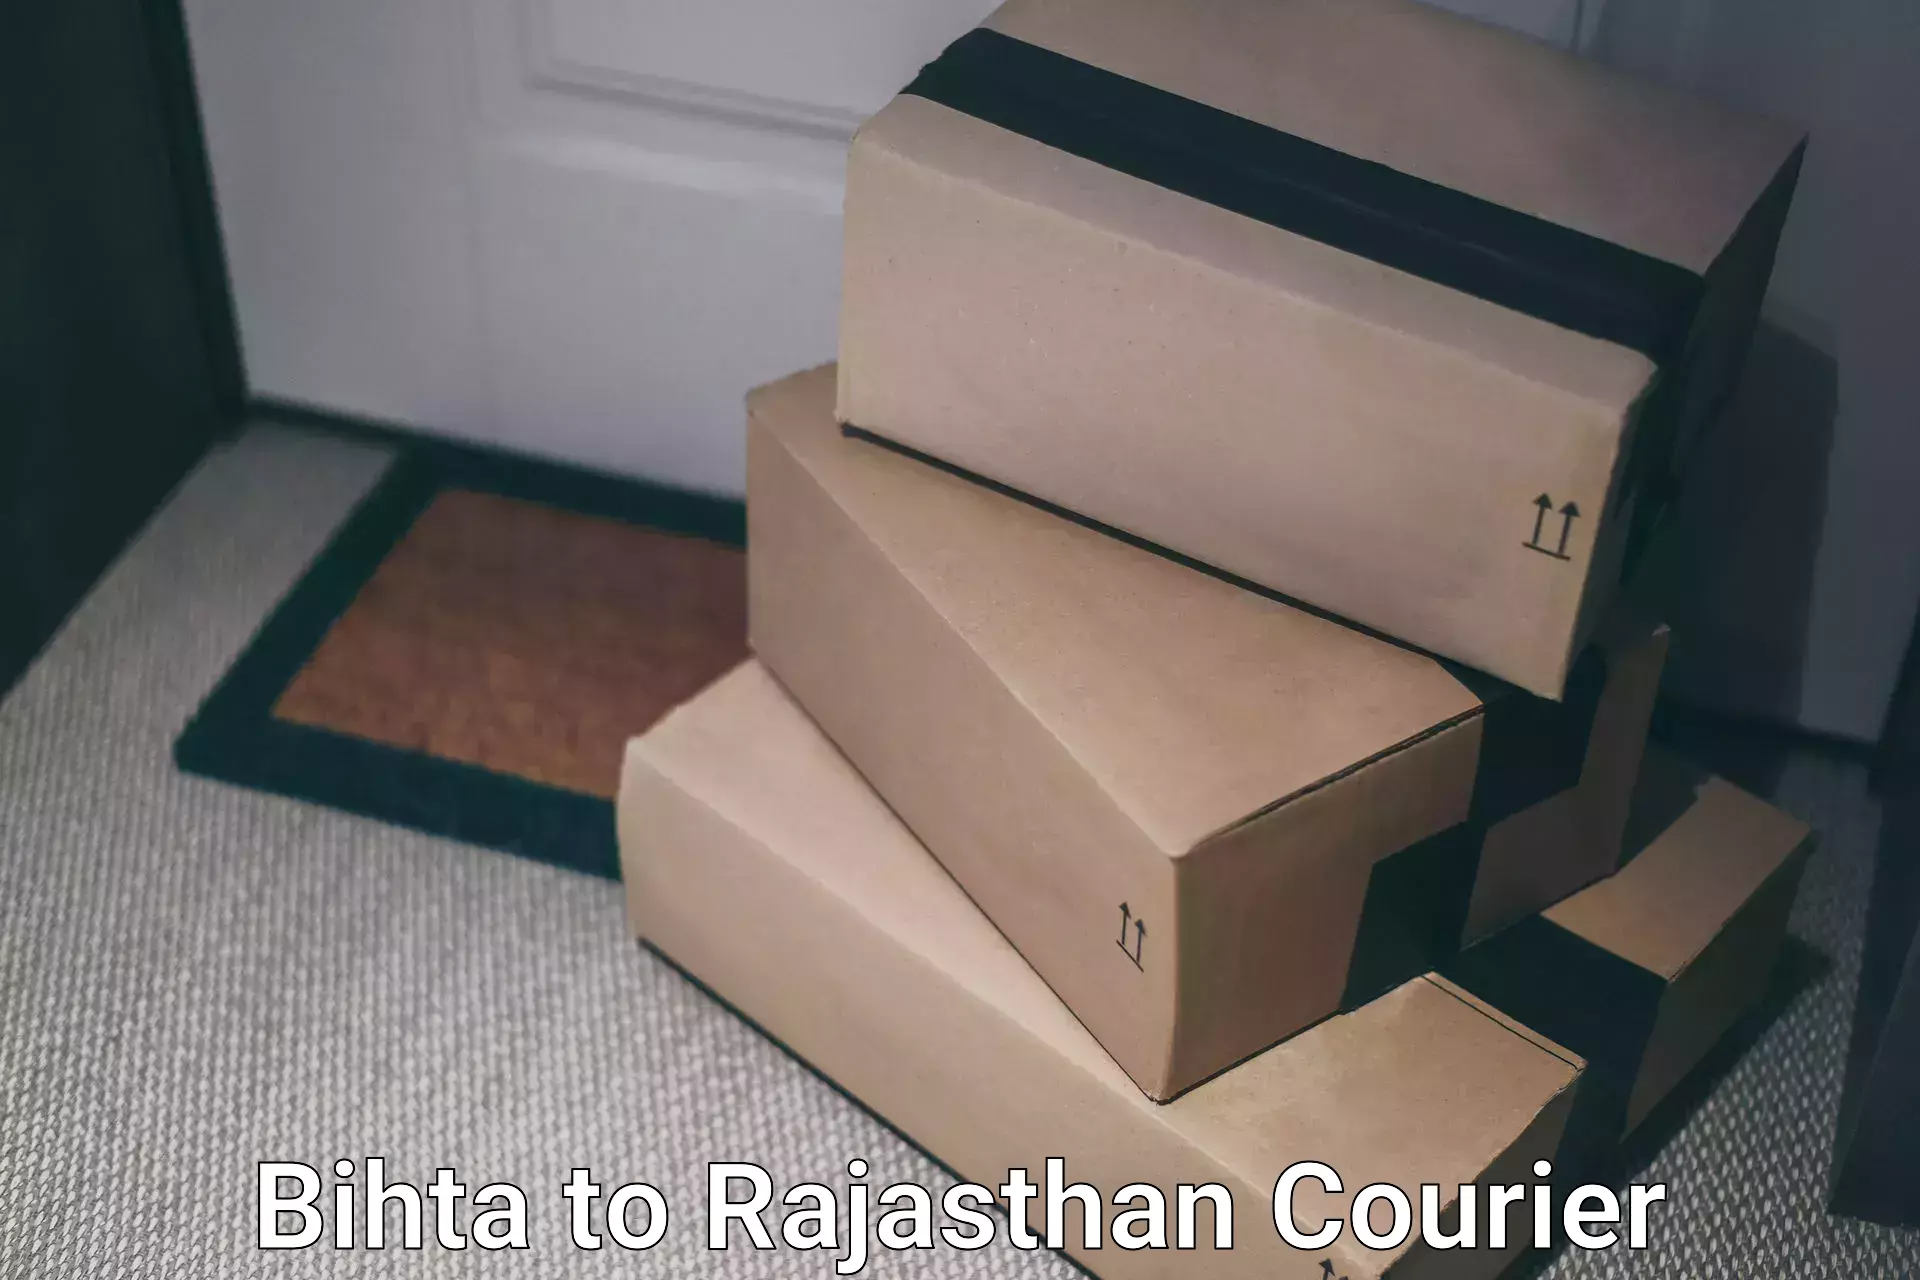 Express logistics providers Bihta to Rajasthan